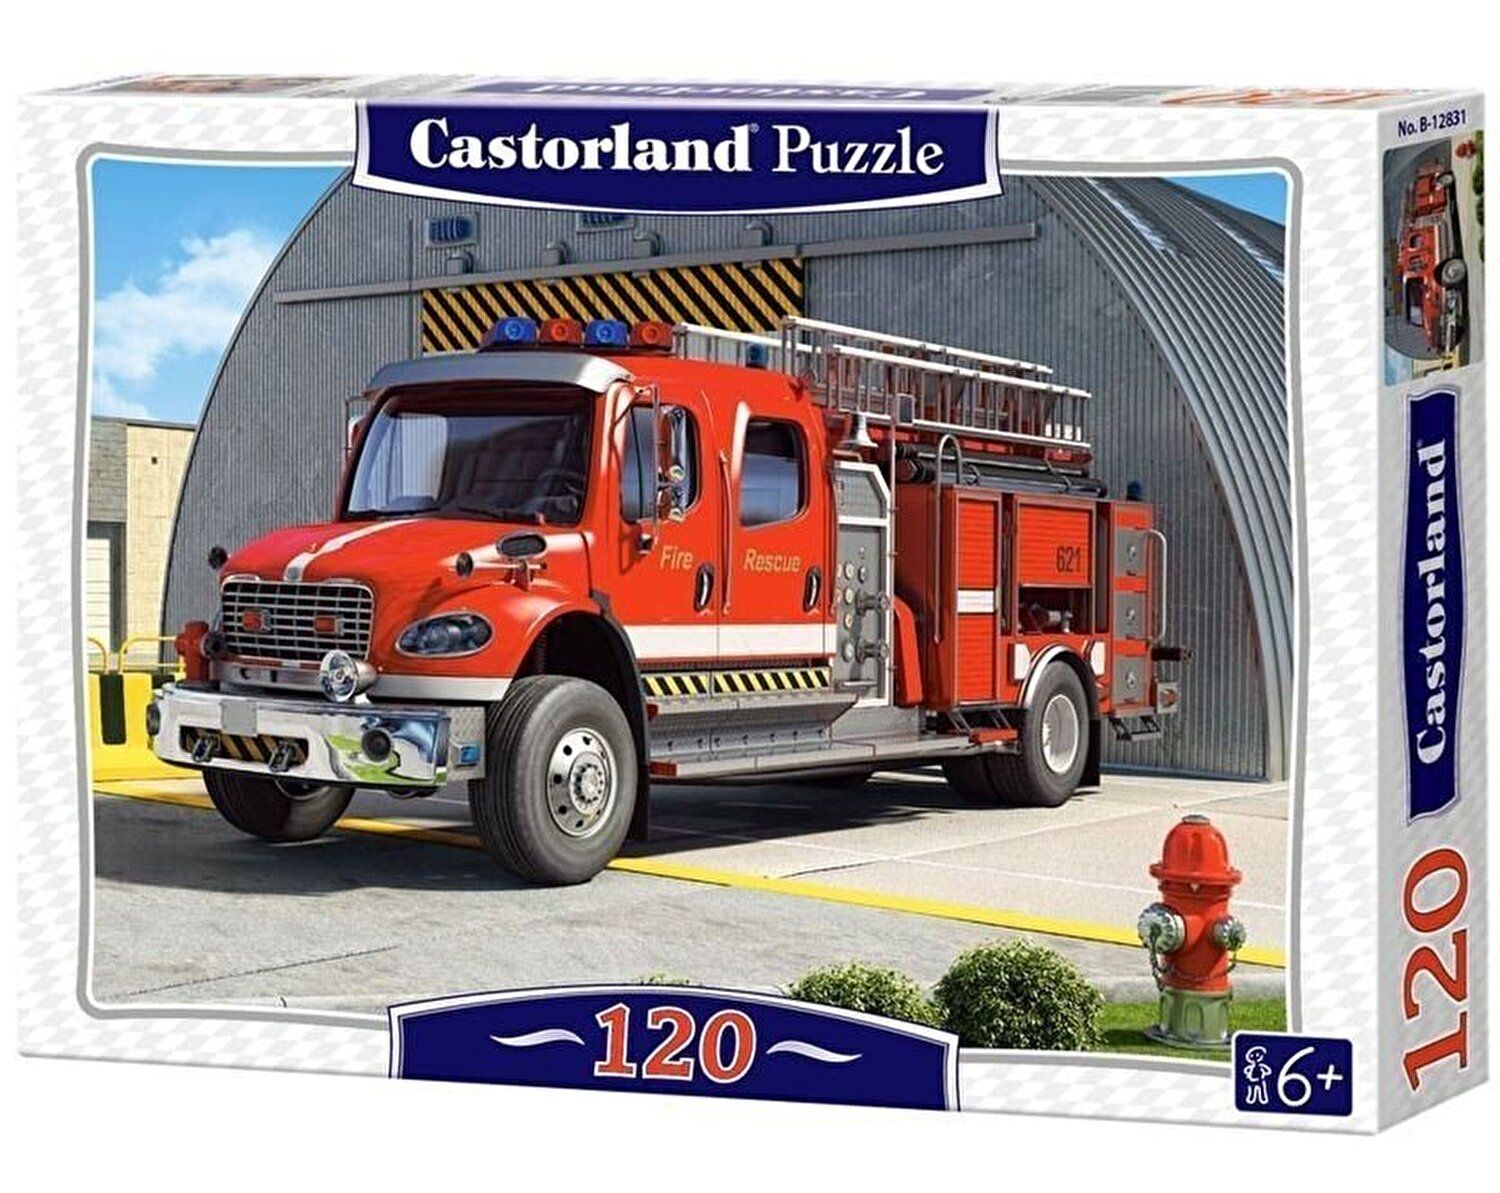 Пазл пожарный. Пазлы Castorland пожарная машина. Пазл Castorland Fire engine (b-12831), 120 дет.. Castorland пазлы автомобиль 500. Пазл Castorland 260 пожарная машина.